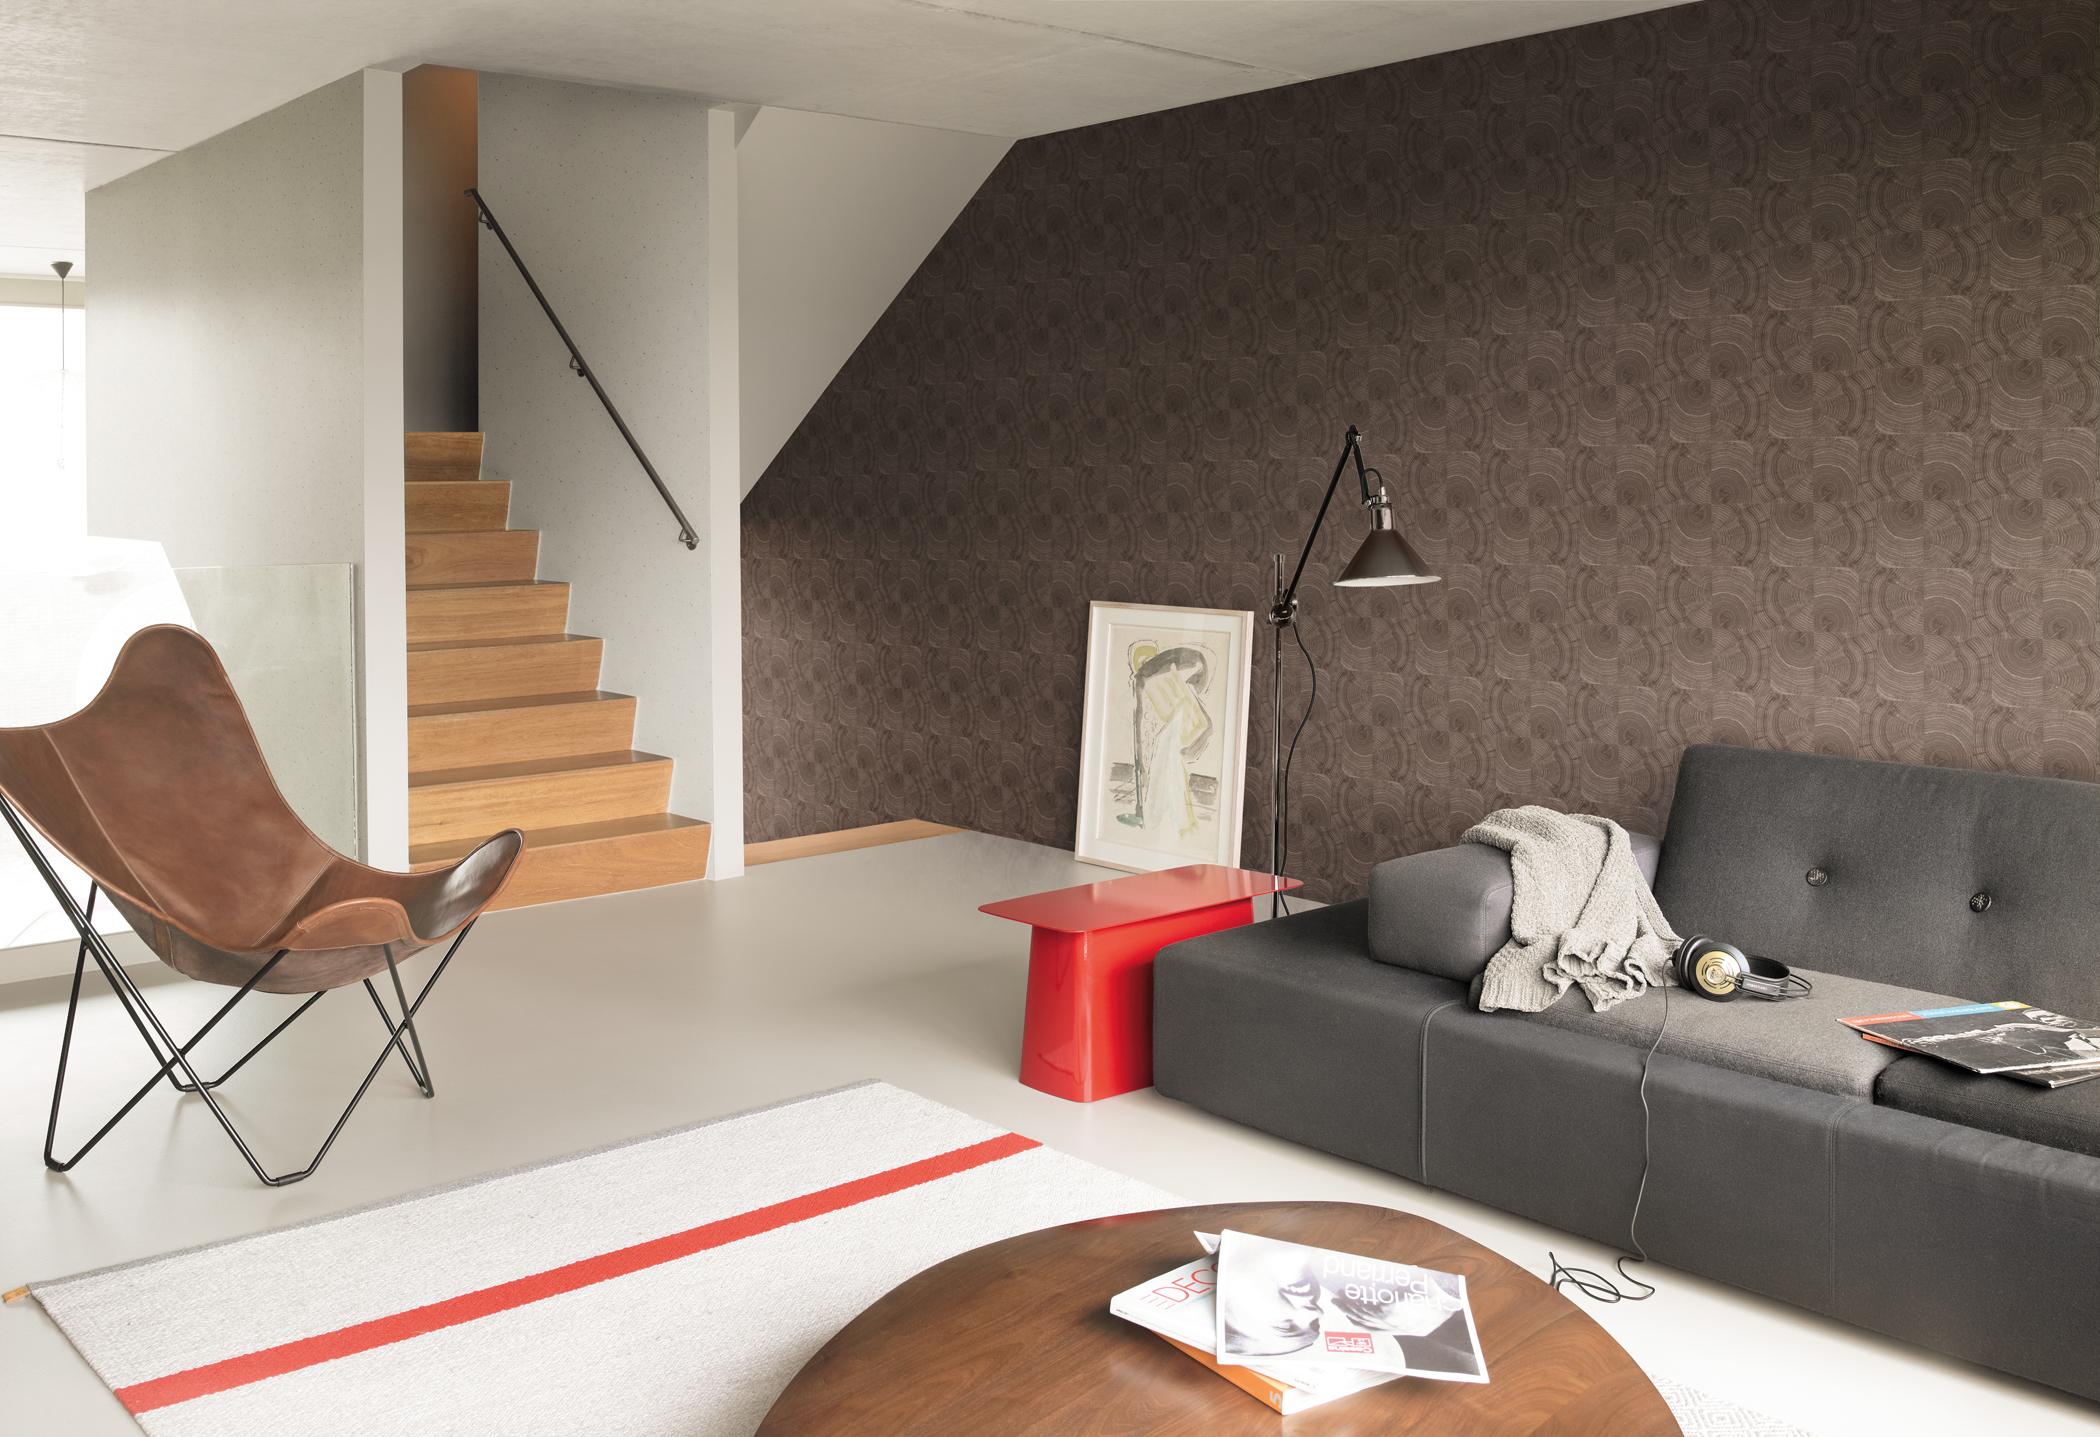 Wandgestaltung mit brauner Mustertapete #wandgestaltung #sofa #mustertapete #tapete ©Rasch